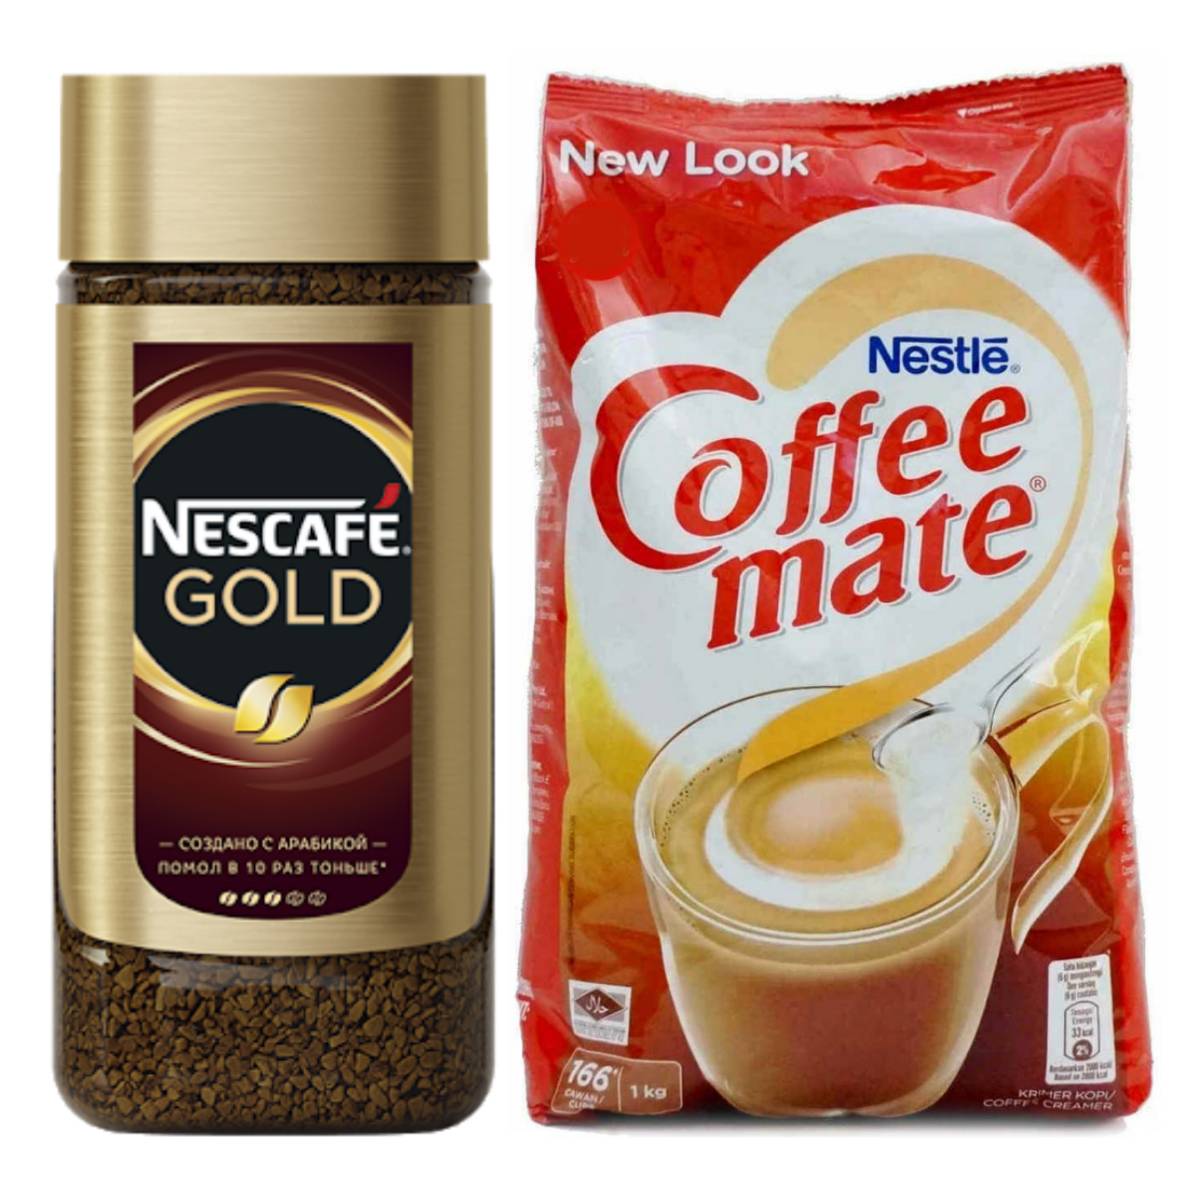 قهوه فوری گلد نسکافه - ۱۹۰ گرم به همراه کافی میت نستله - ۱ کیلوگرم